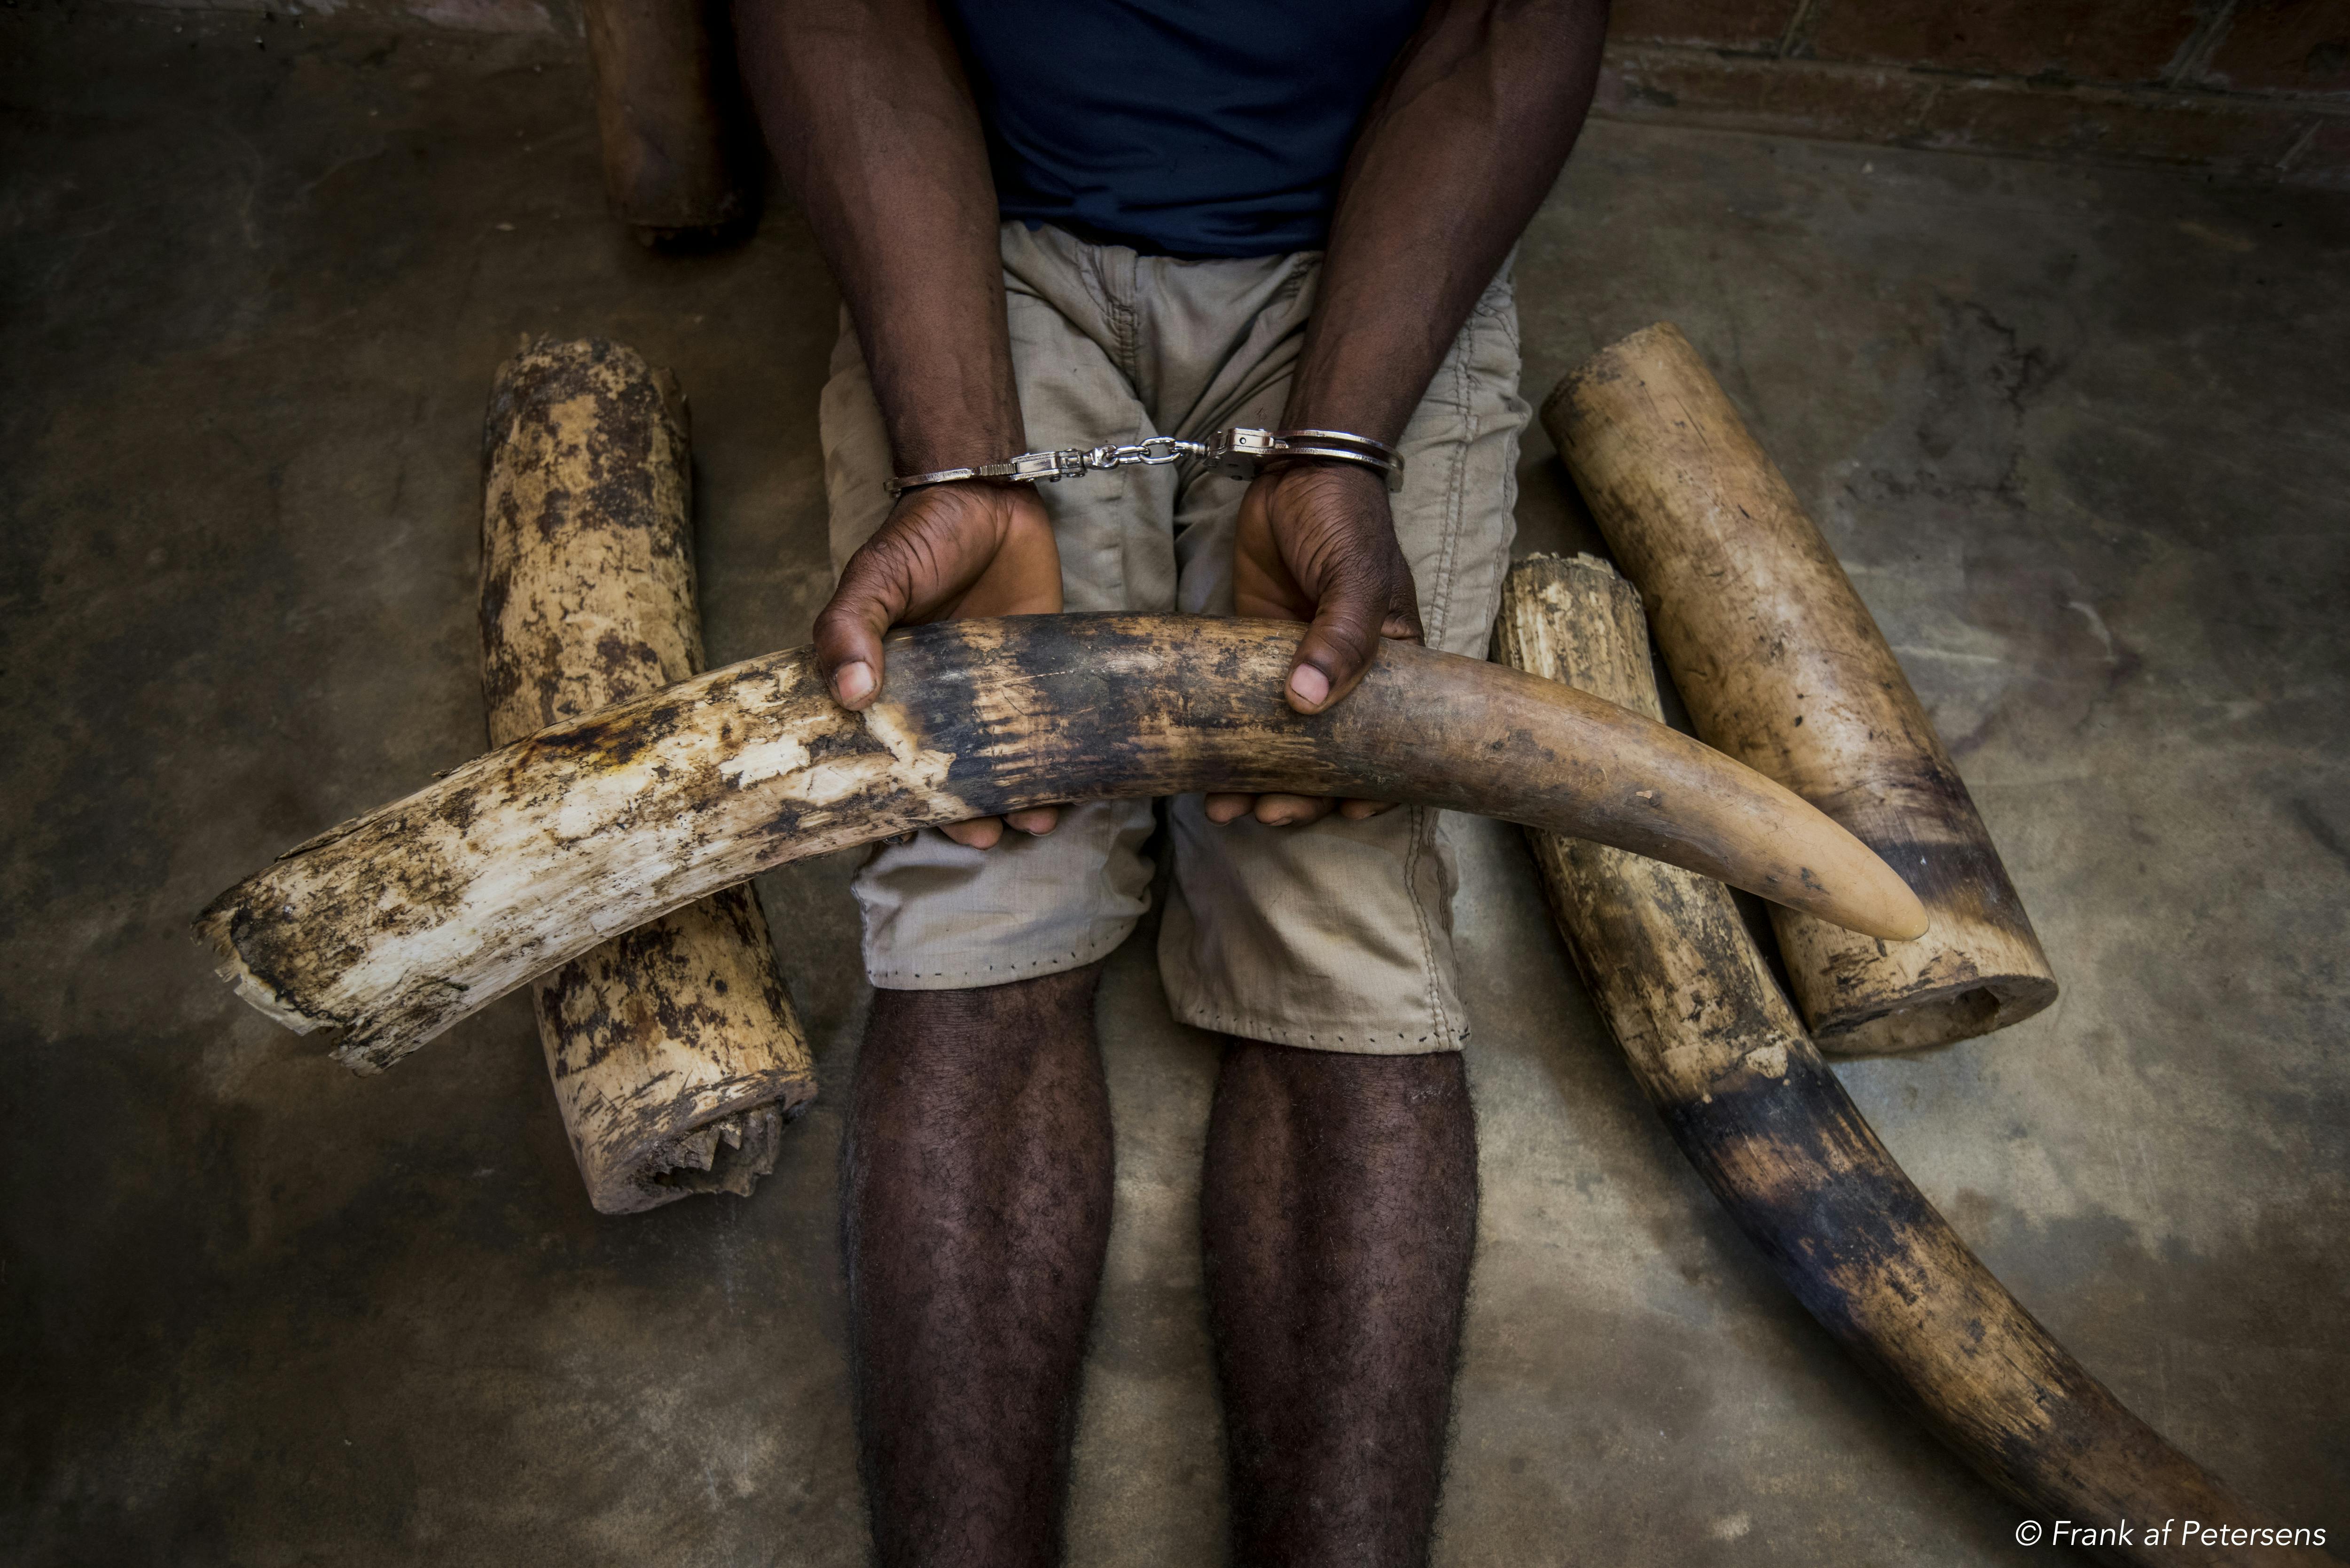 U.S arrests leaders of major drug and ivory smuggling network in Africa